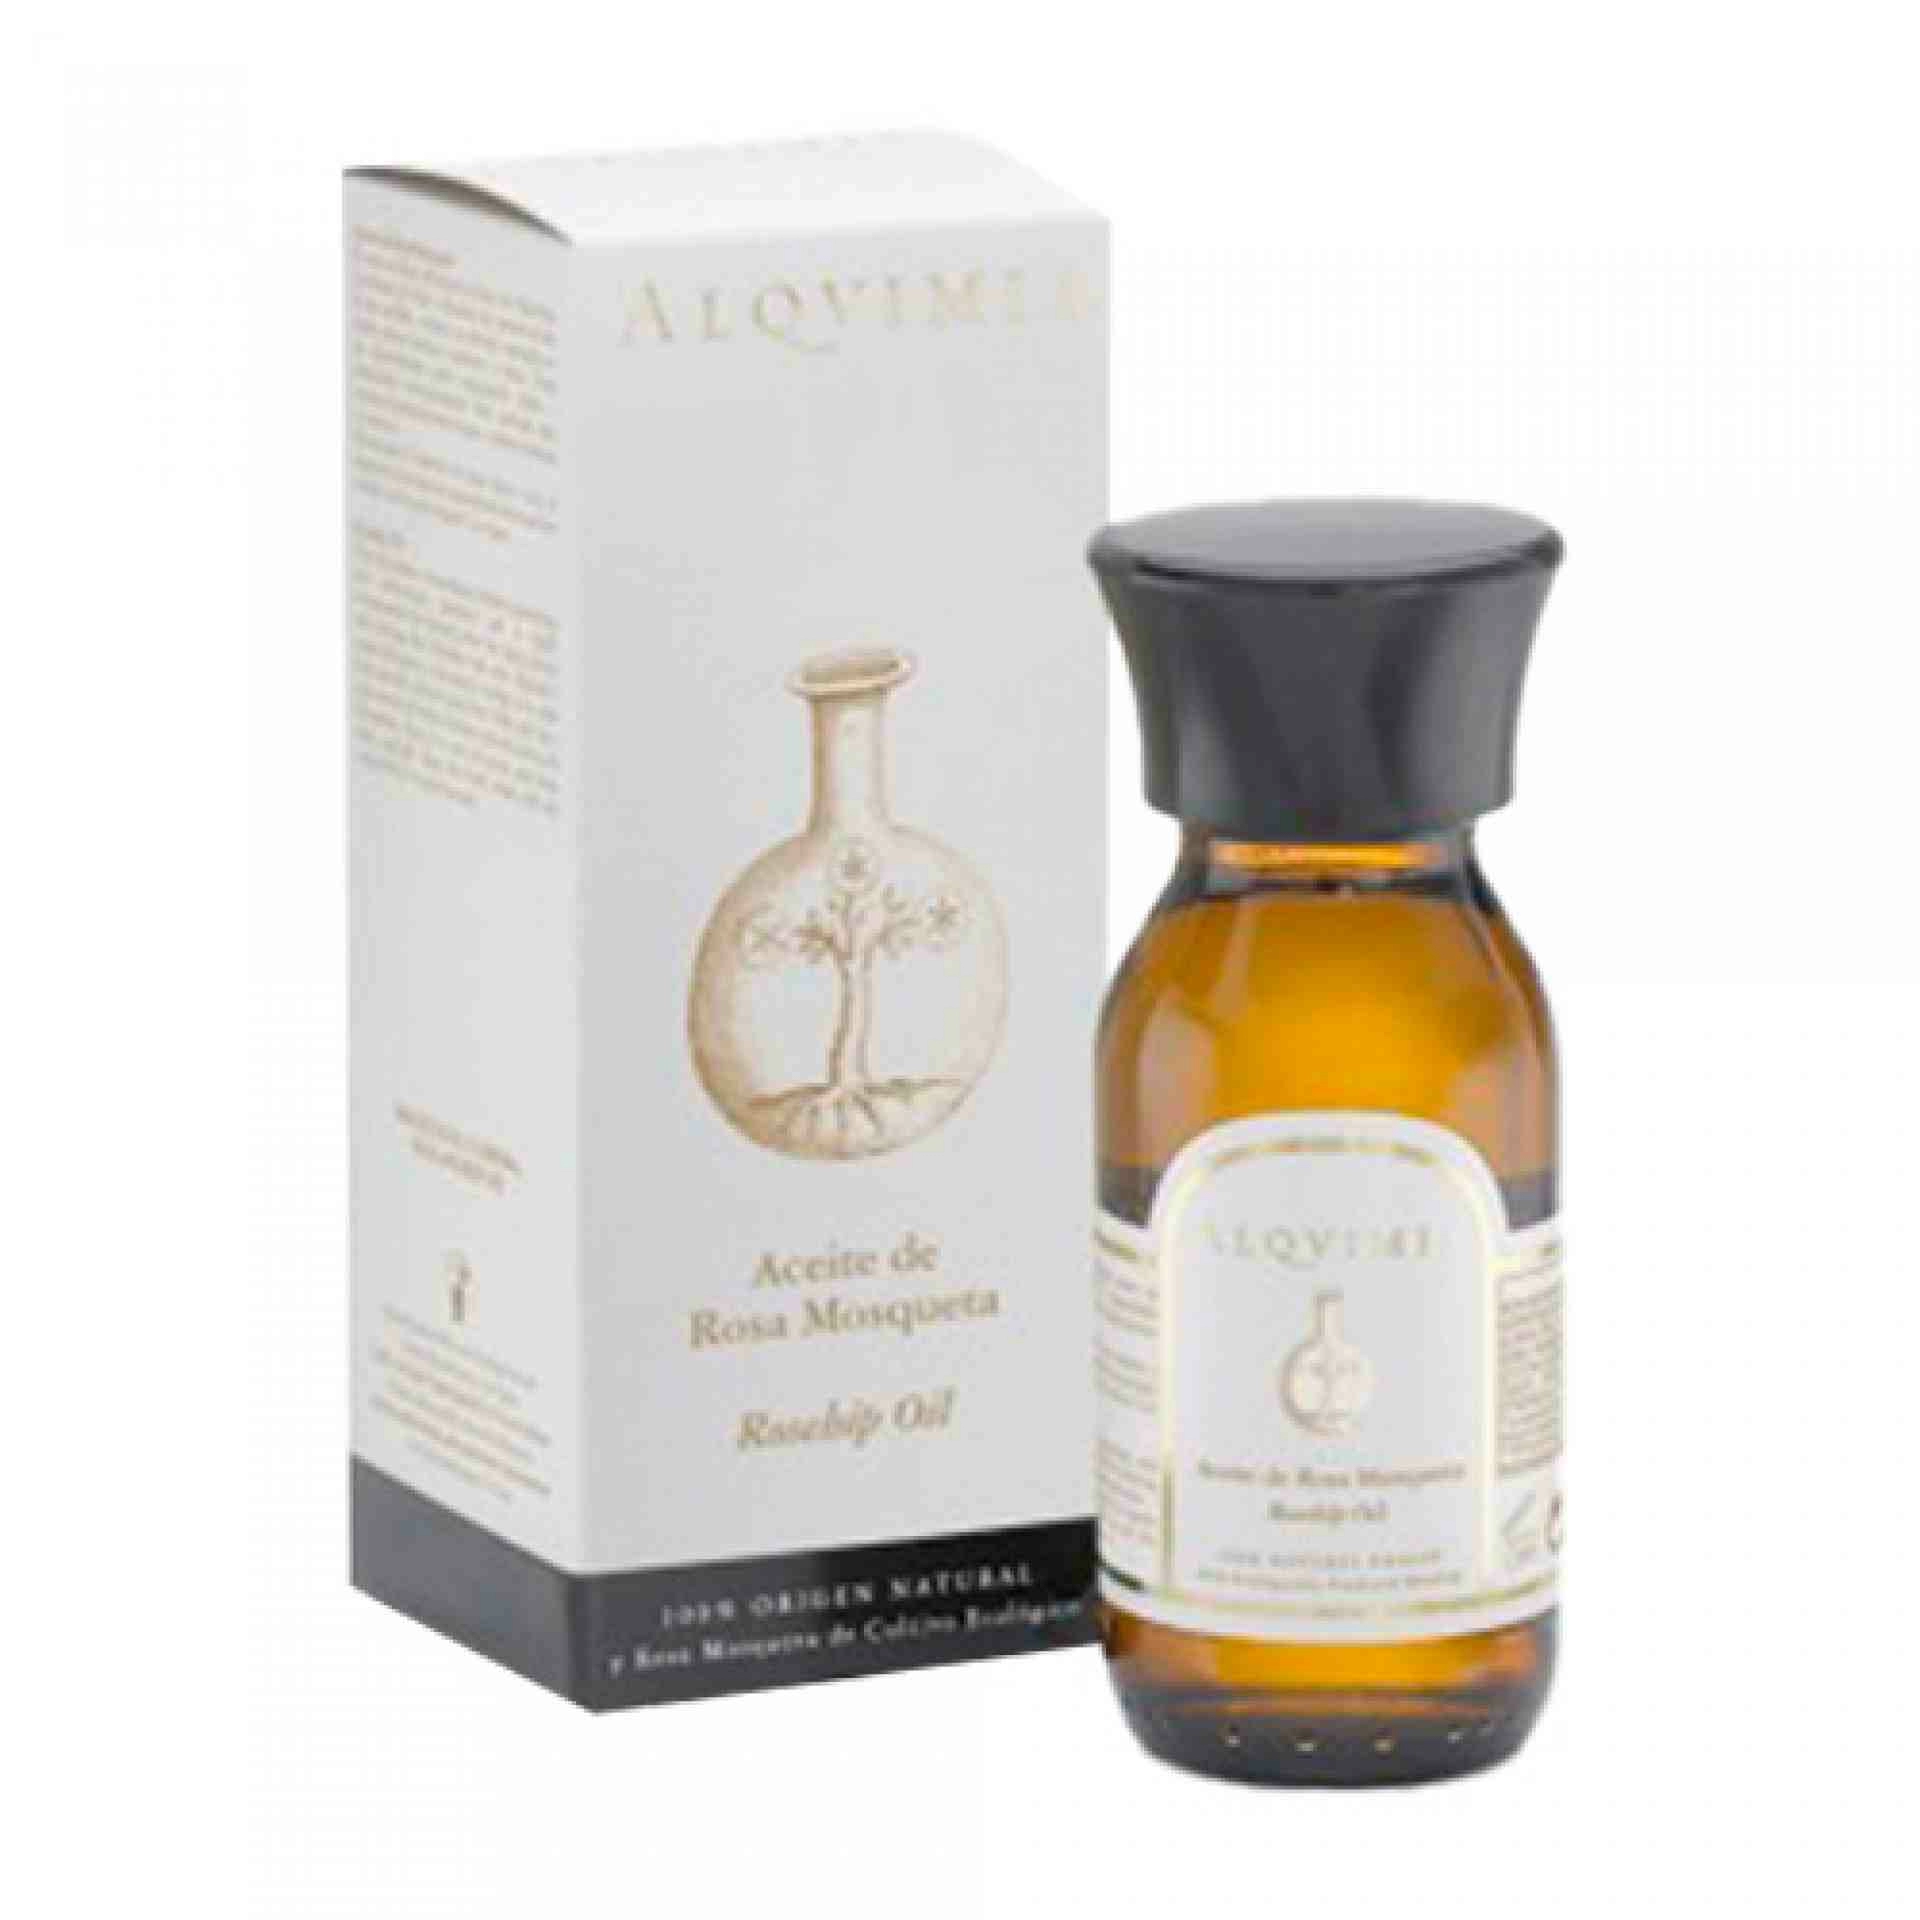 Aceite de Rosa Mosqueta I Antiedad 60ml - Alqvimia ®